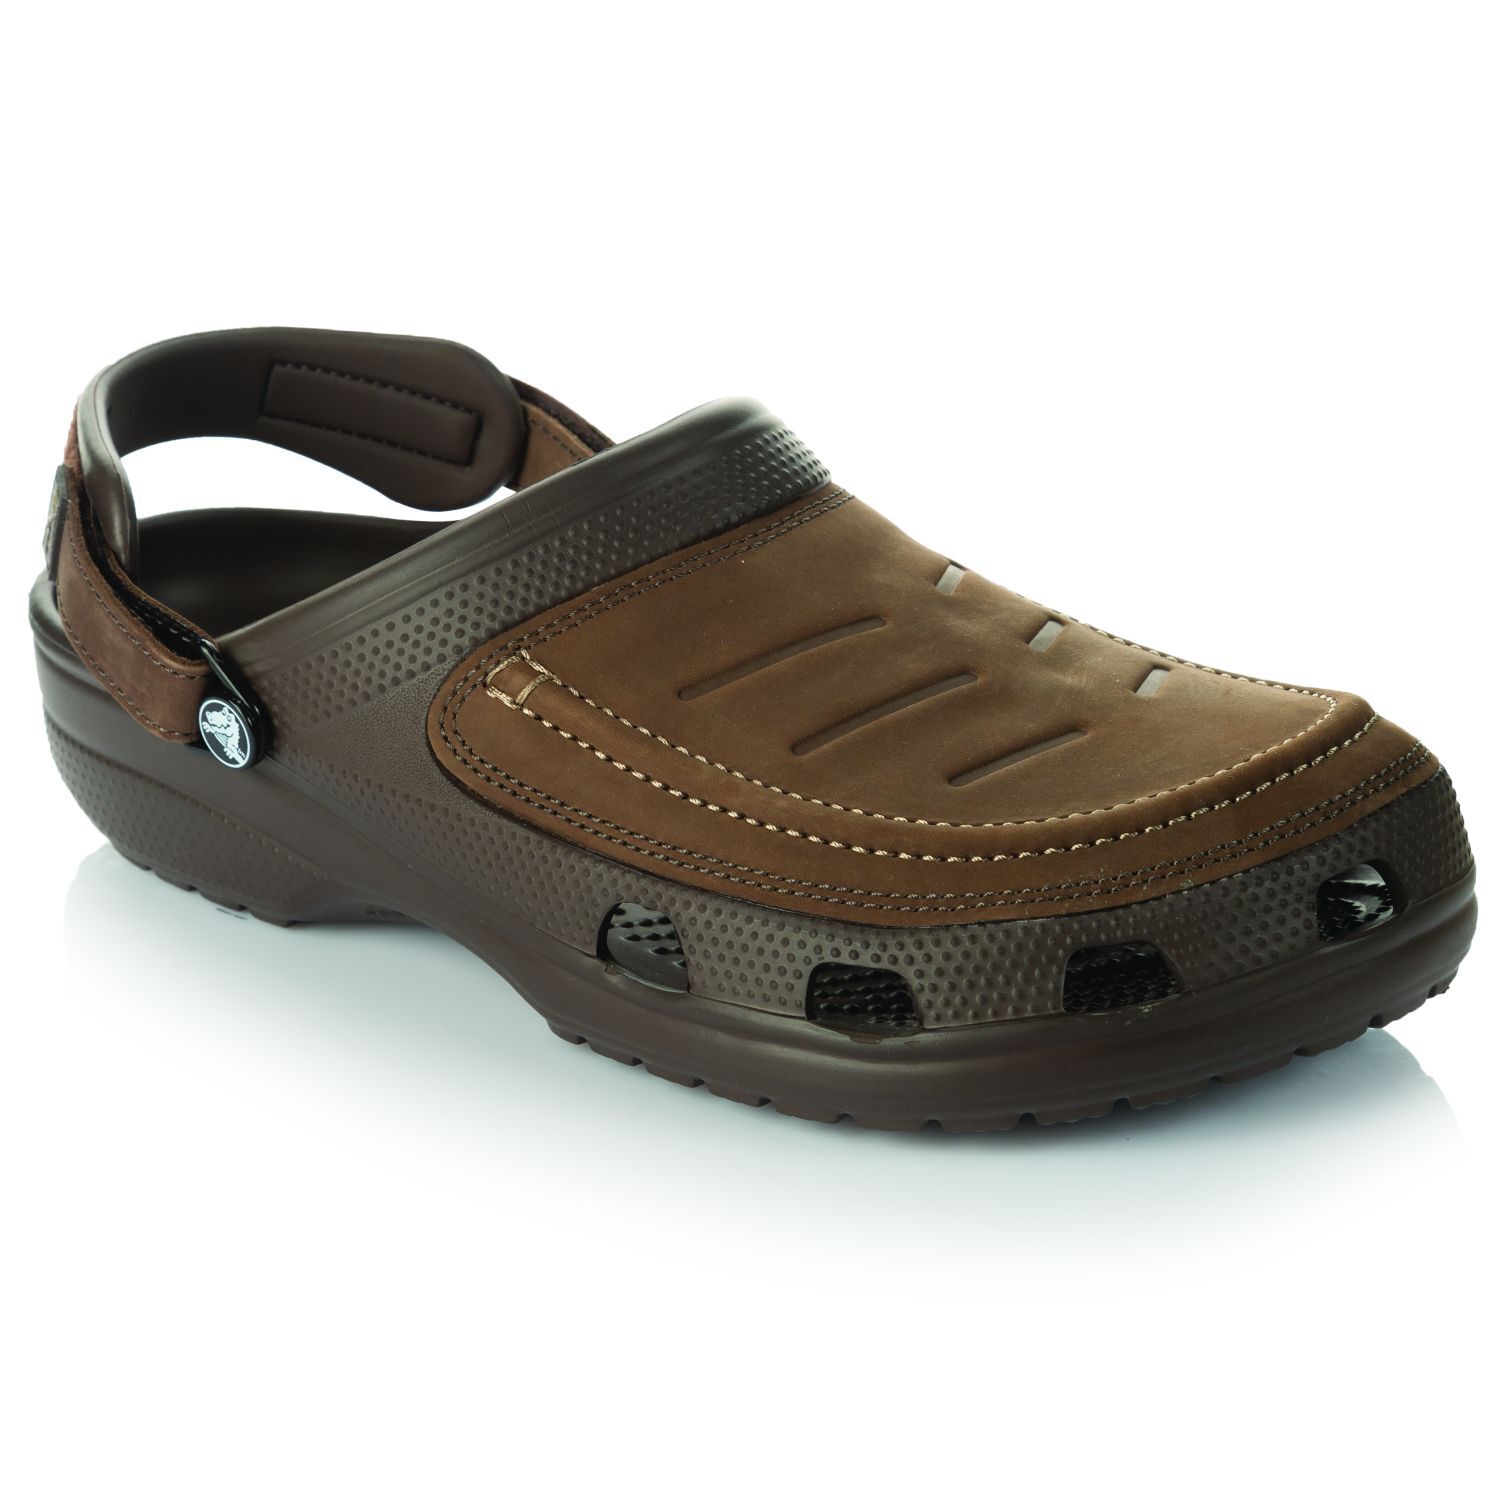 crocs sandals sale